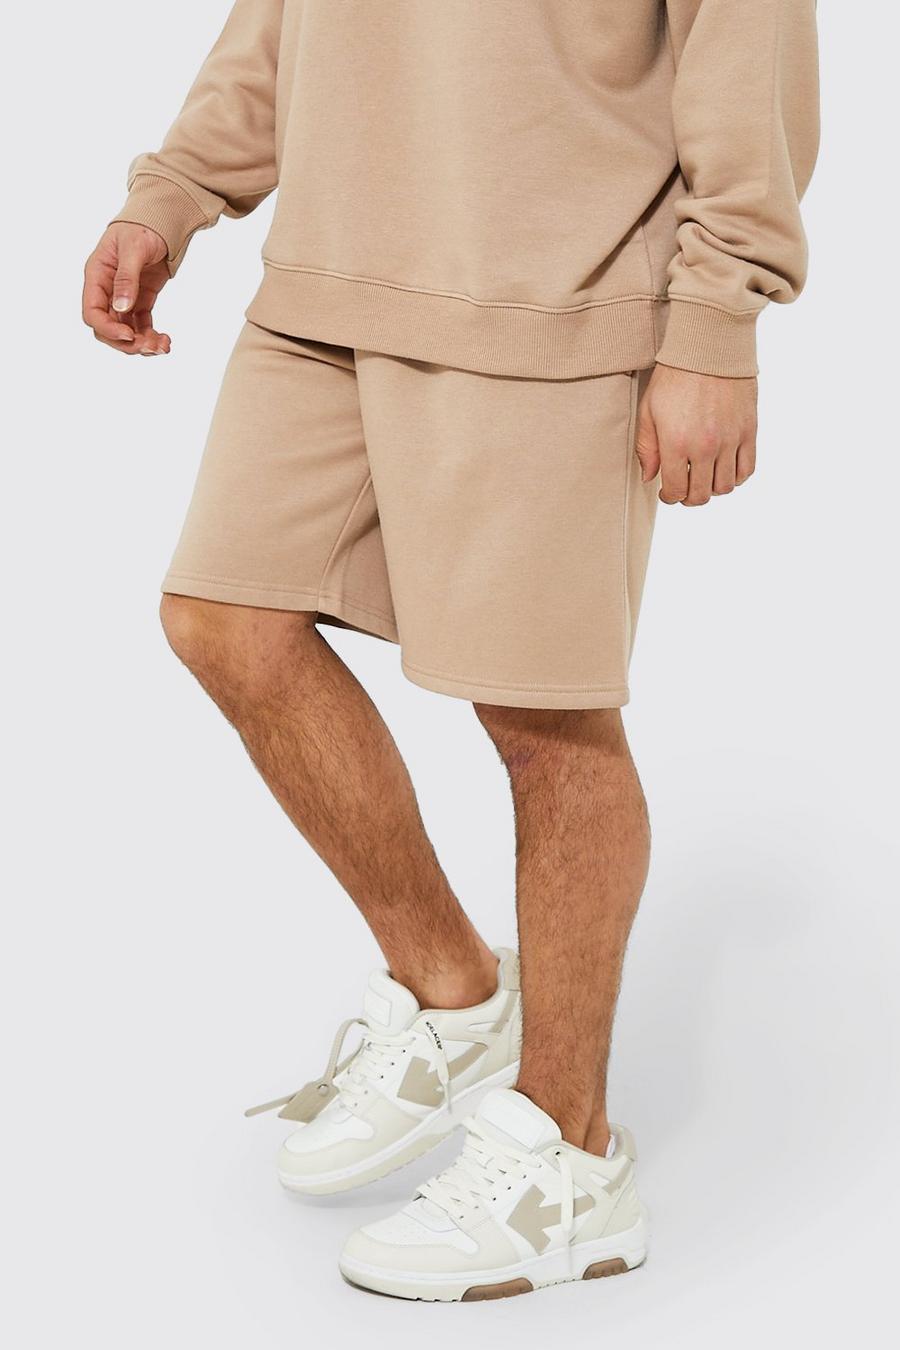 Lockere Jersey-Shorts aus REEL Baumwolle, Taupe beige